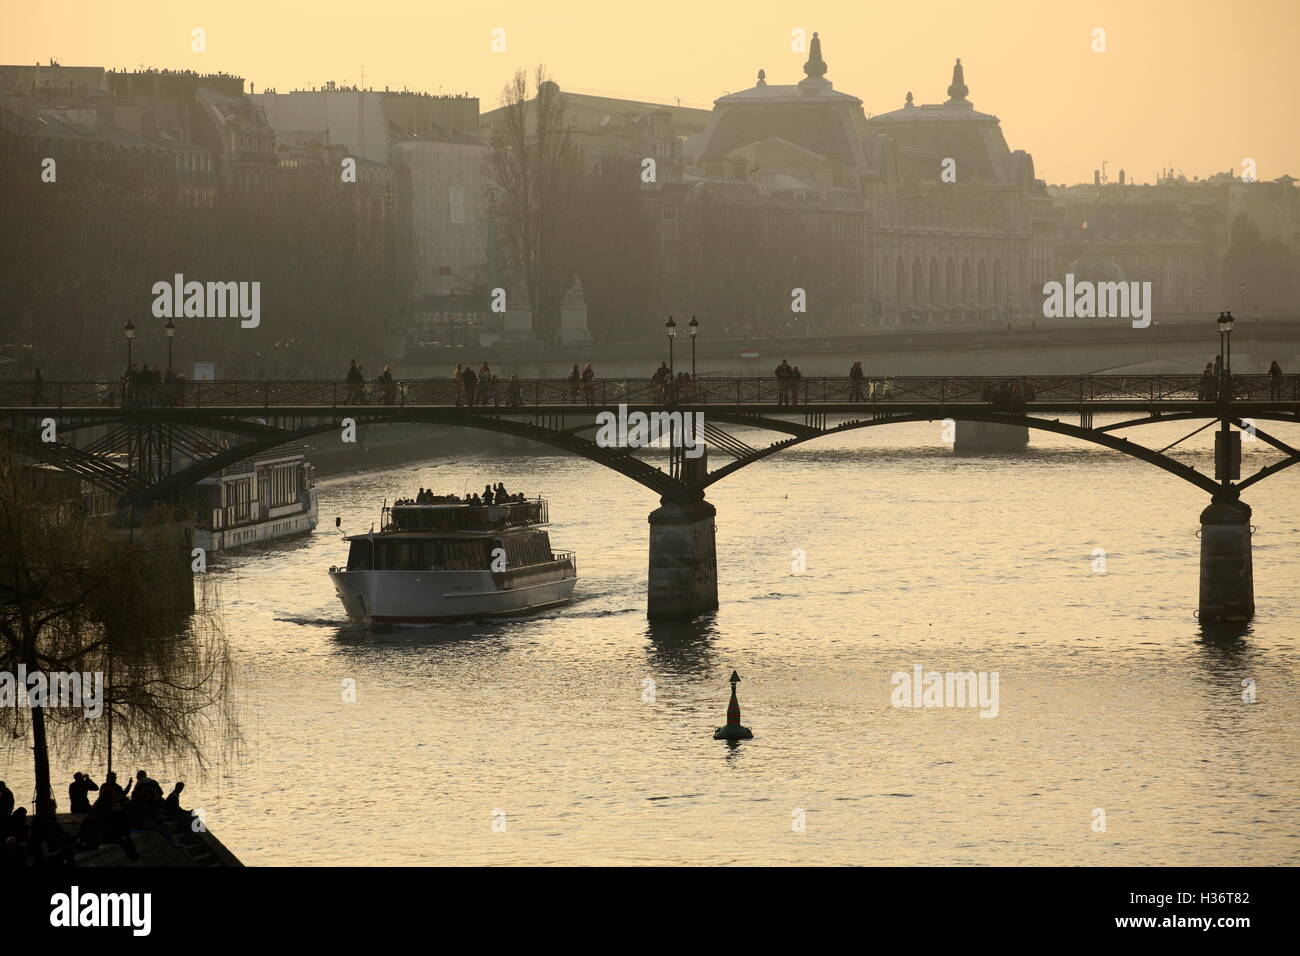 A tour boat under Passerelle des Arts aka Pont des Arts (Bridge of the Arts) over River Seine during sunset. Paris. France Stock Photo